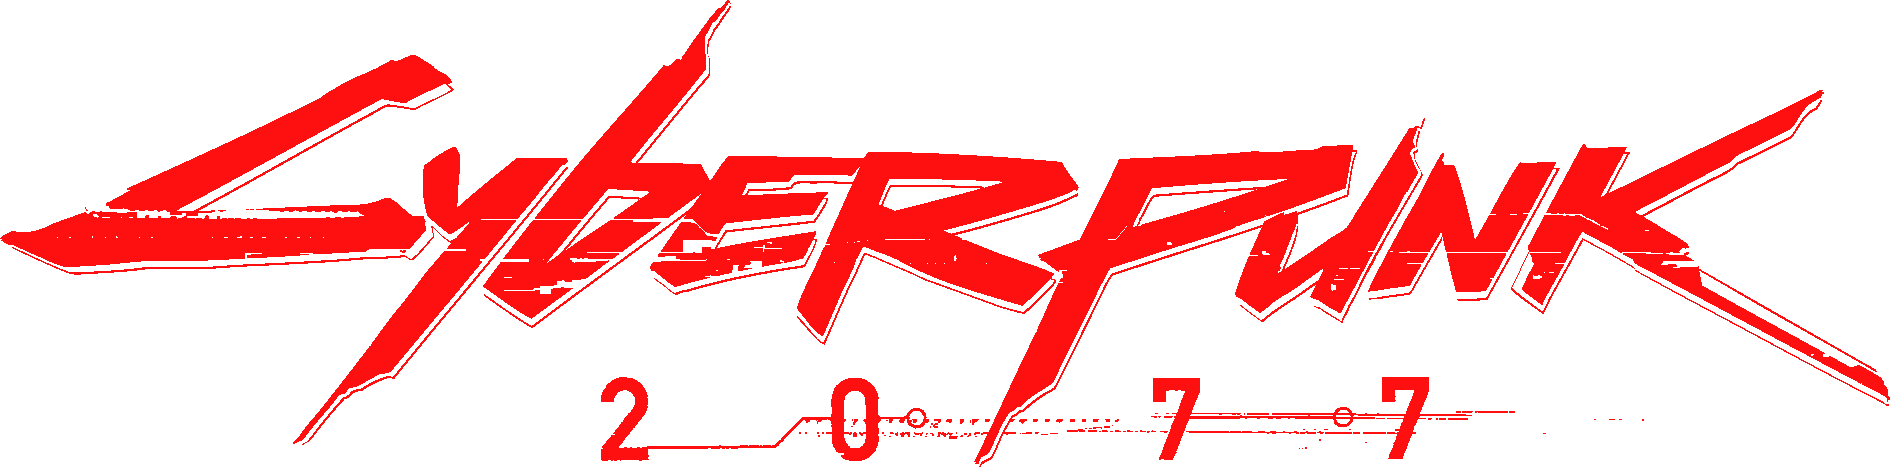 Cyberpunk logo ae фото 115